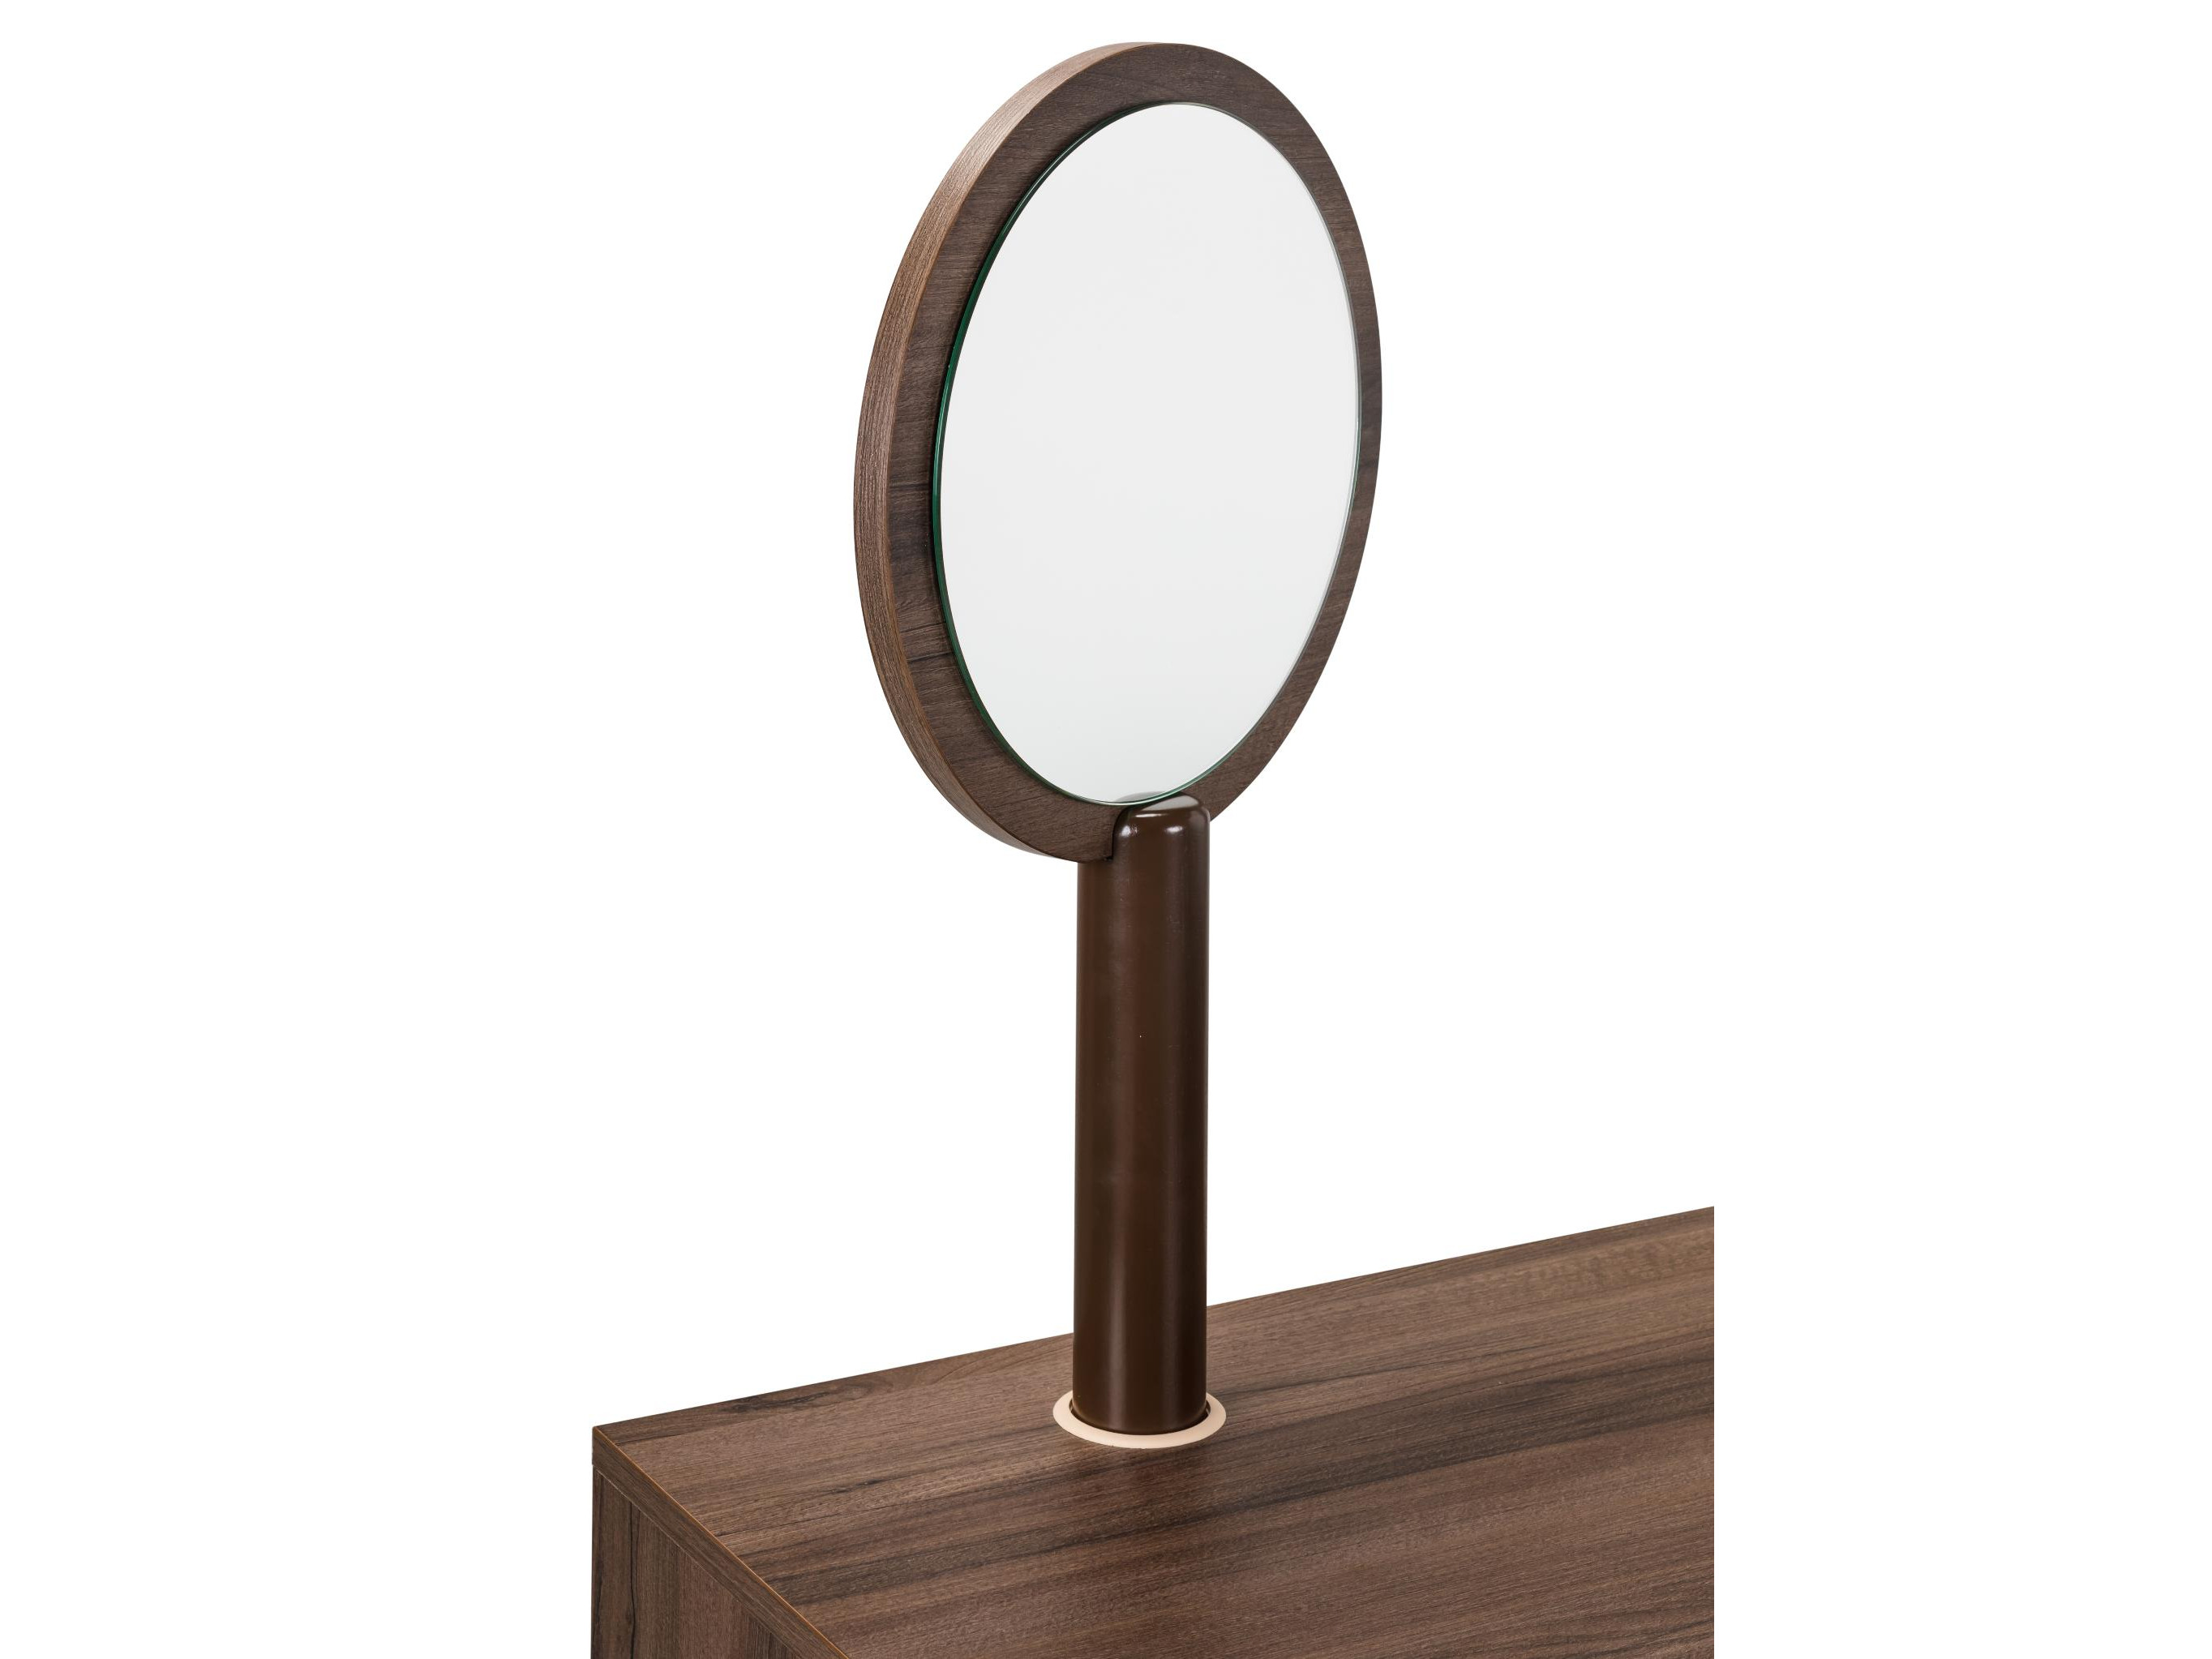 Зеркало для стола туалетного Сканди Орех Орех табак, Коричневый, ЛДСП зеркало изабель орех темный коричневый мдф зеркало лдсп